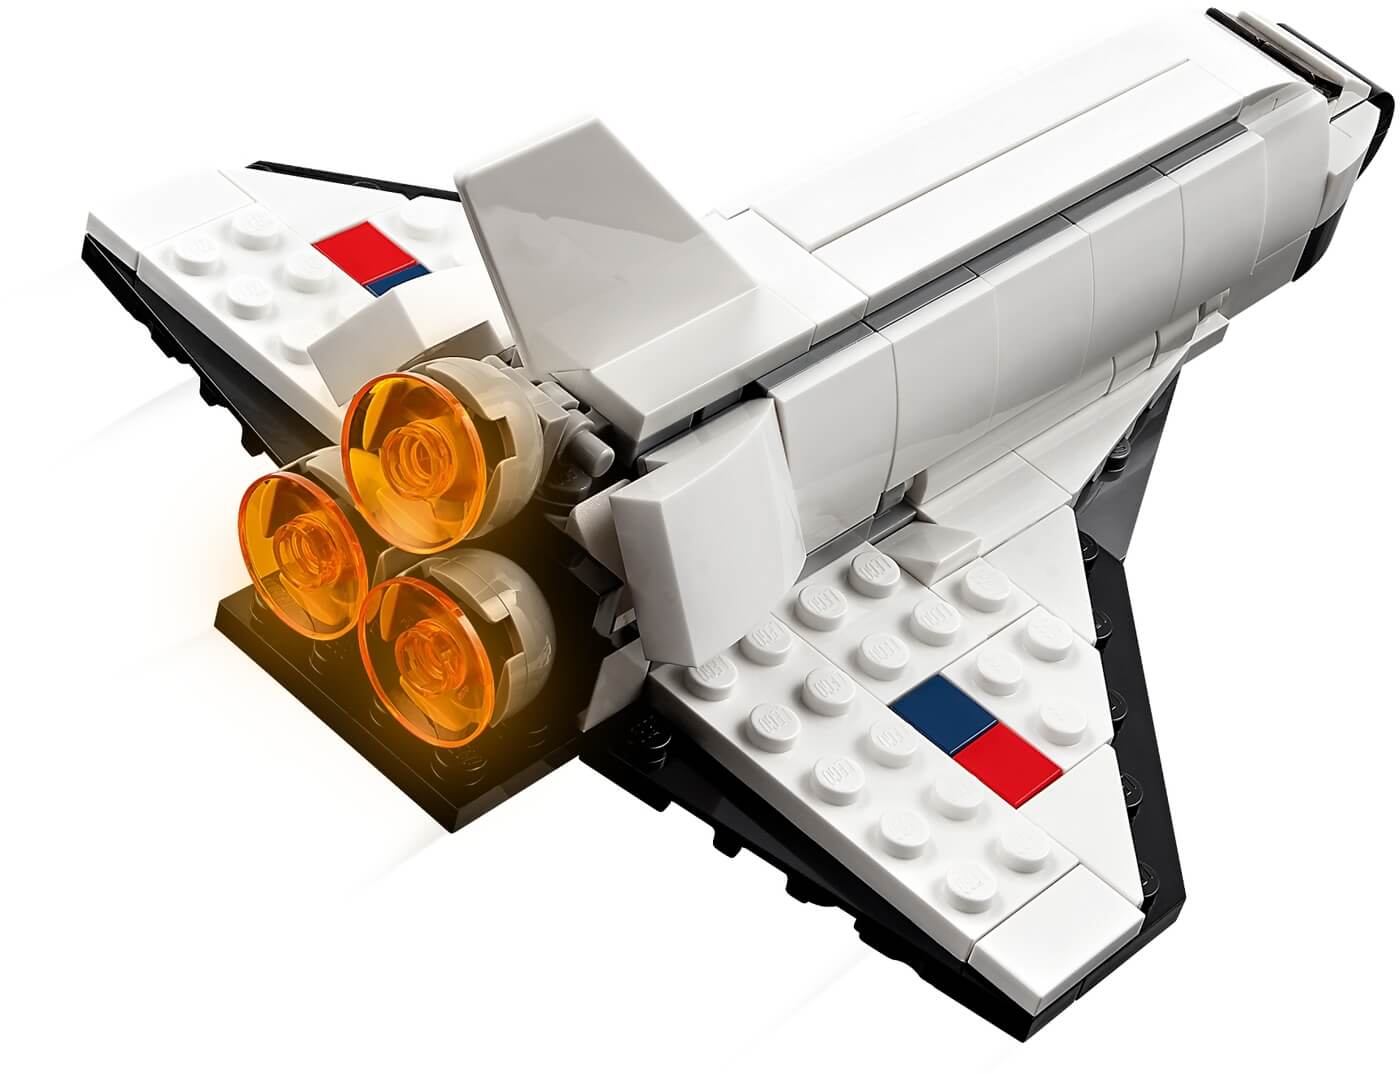 Lanzadera Espacial 3en1 ( Lego 31134 ) imagen b